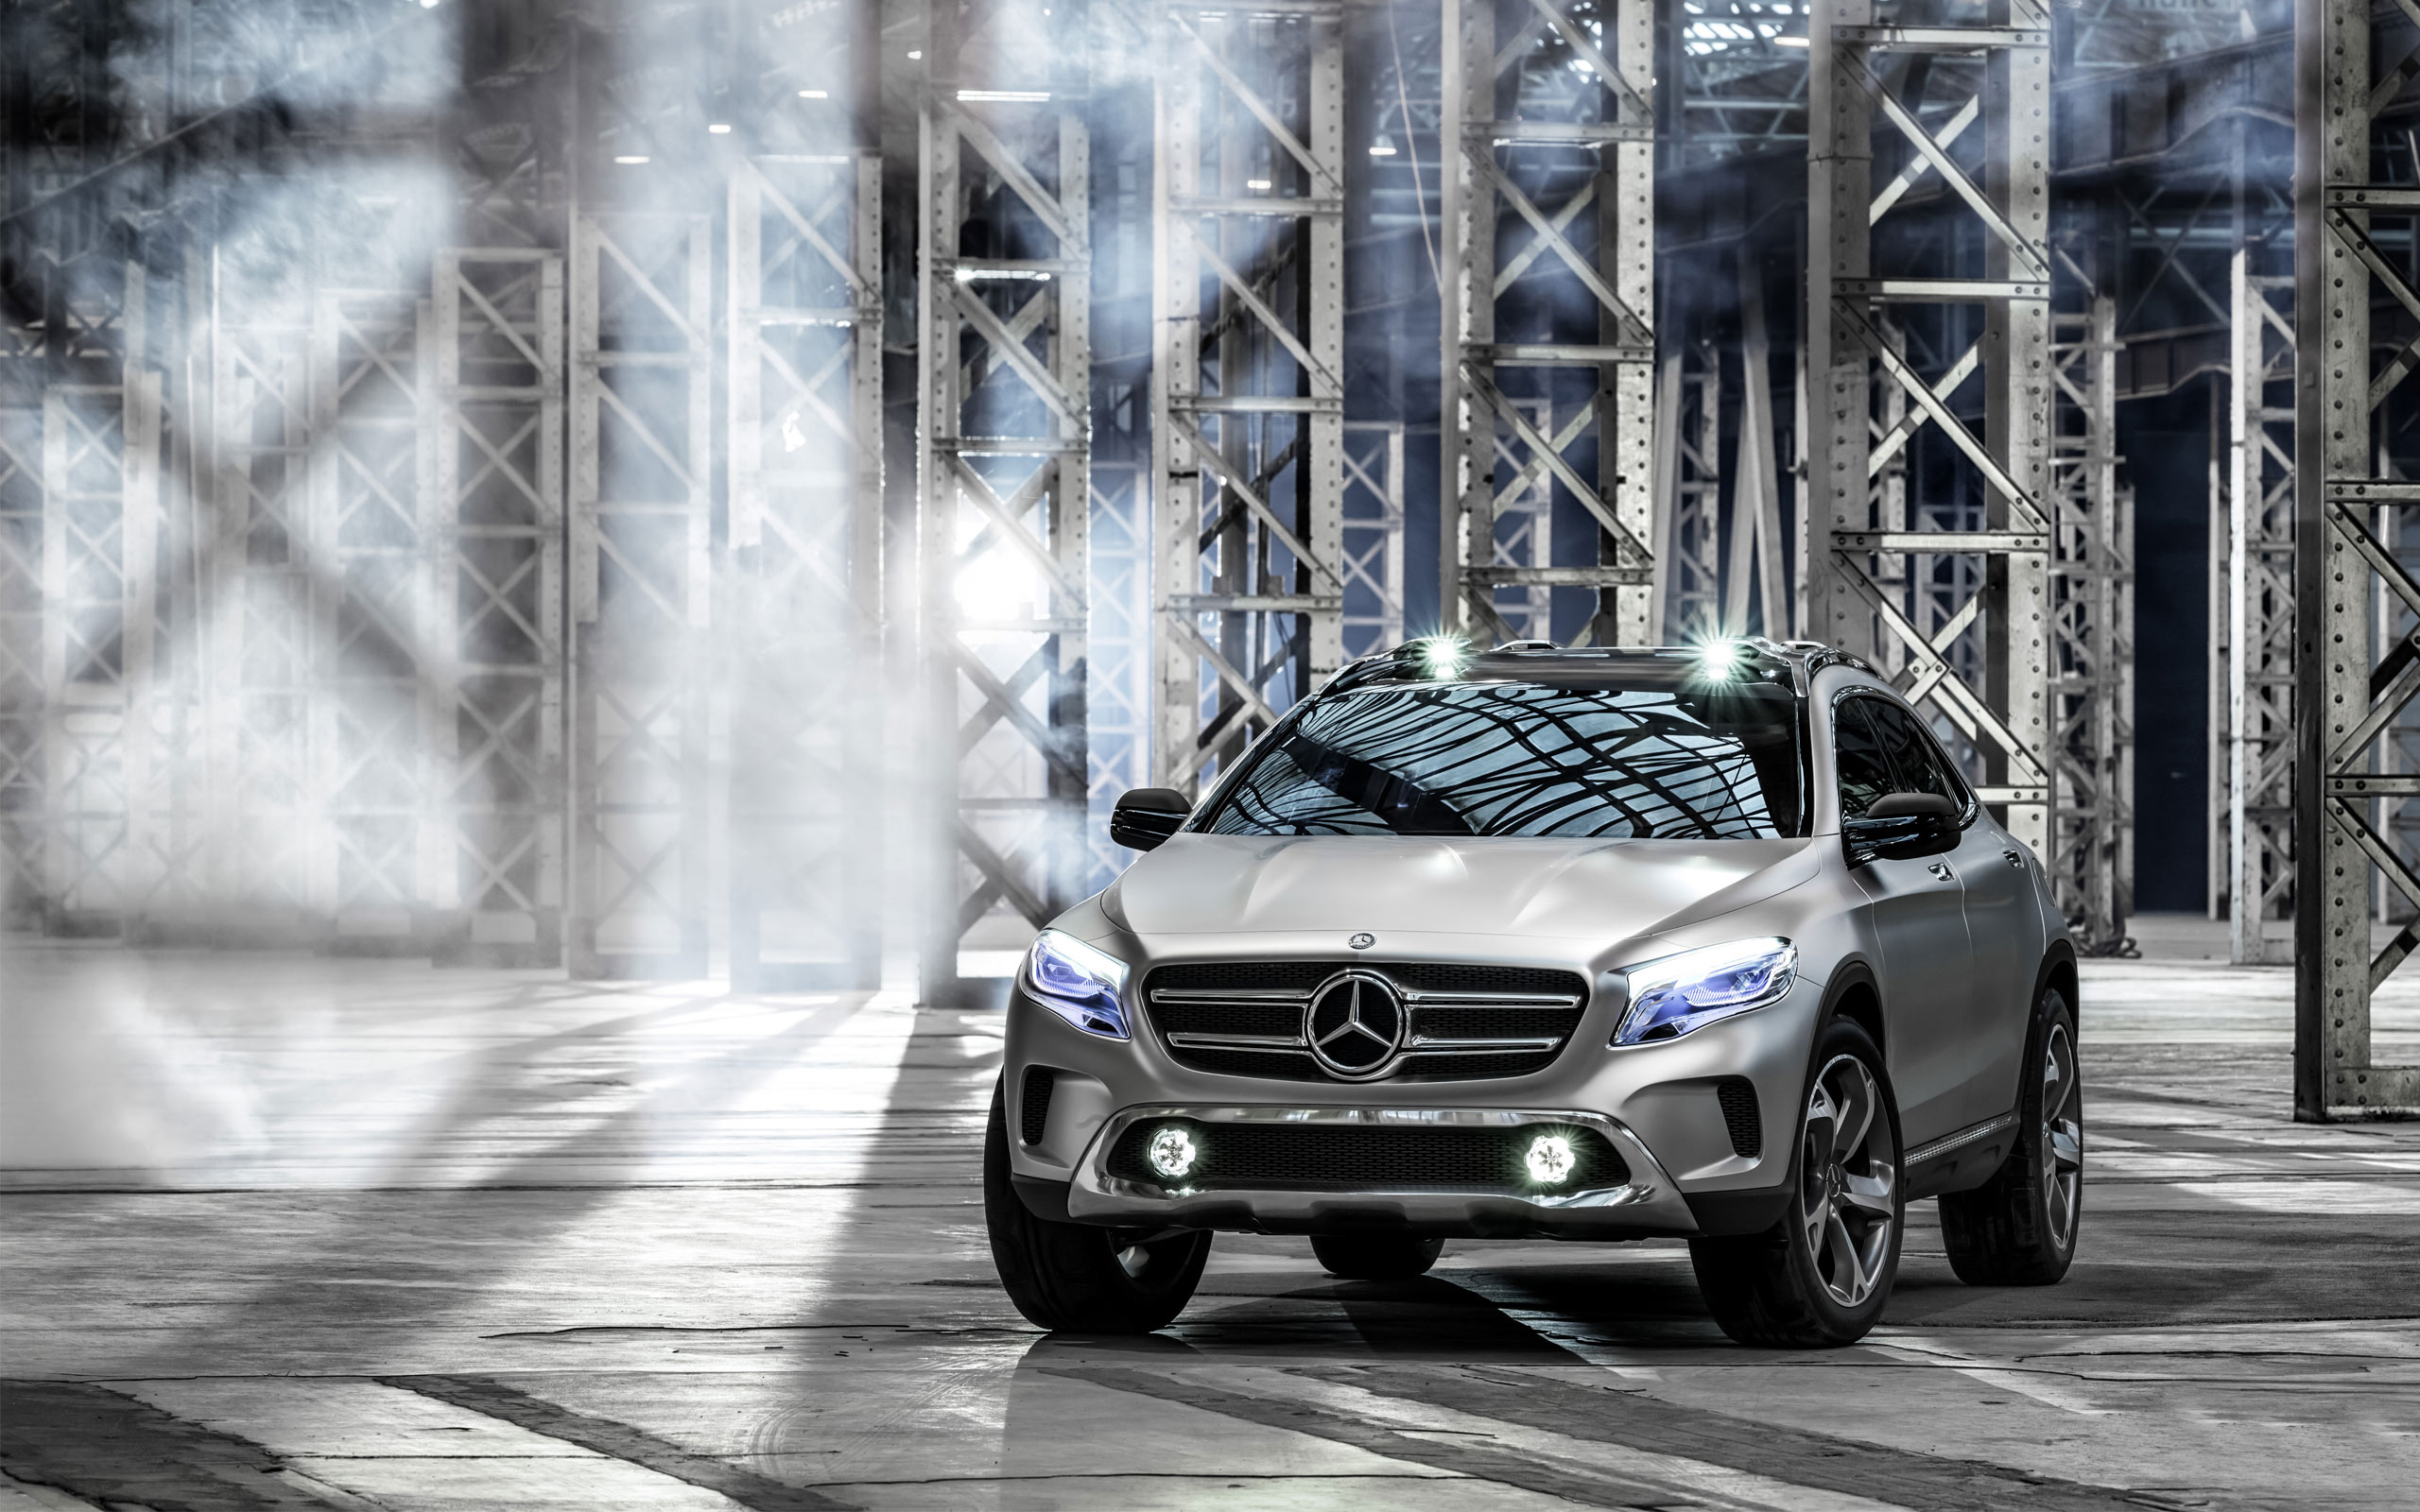 2013 Mercedes Benz GLA Concept Wallpaper HD Car Backgrounds